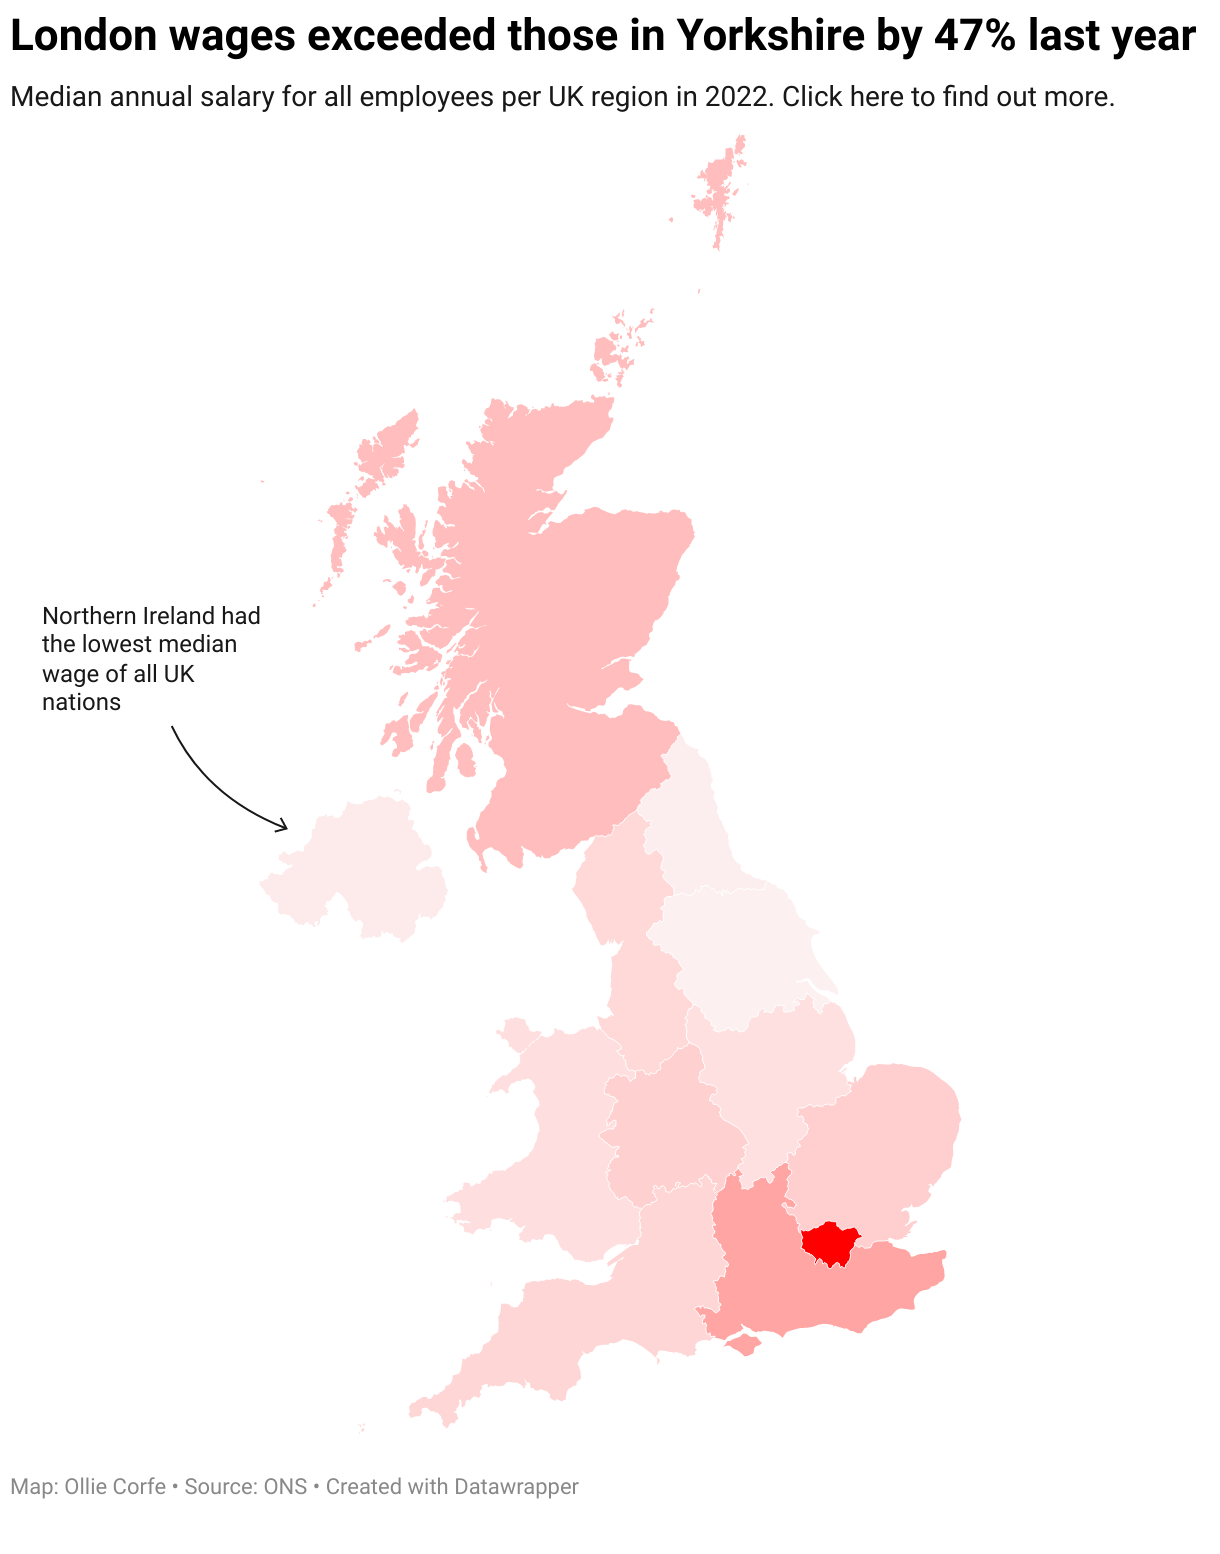 Map displaying median wage disparities between UK regions.